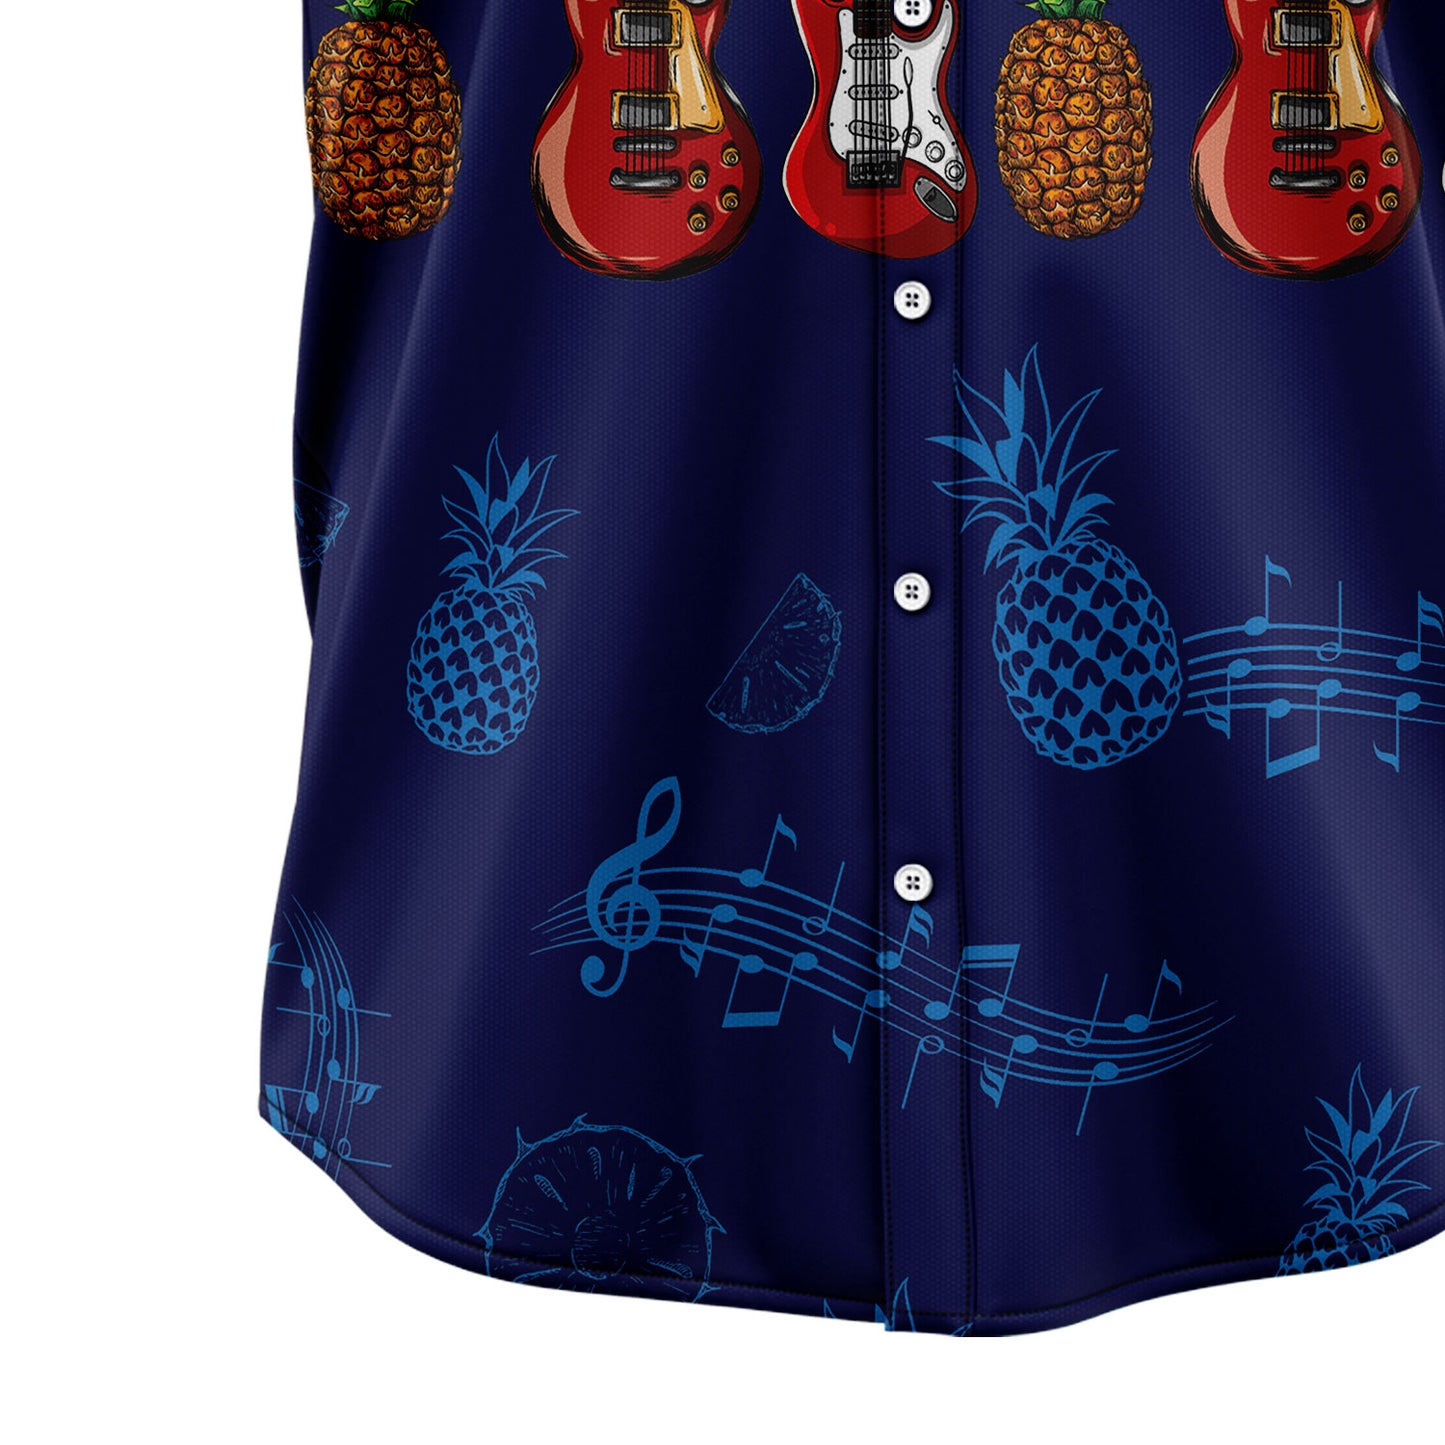 Bass Guitar Musical Instrument G5805 Hawaiian Shirt